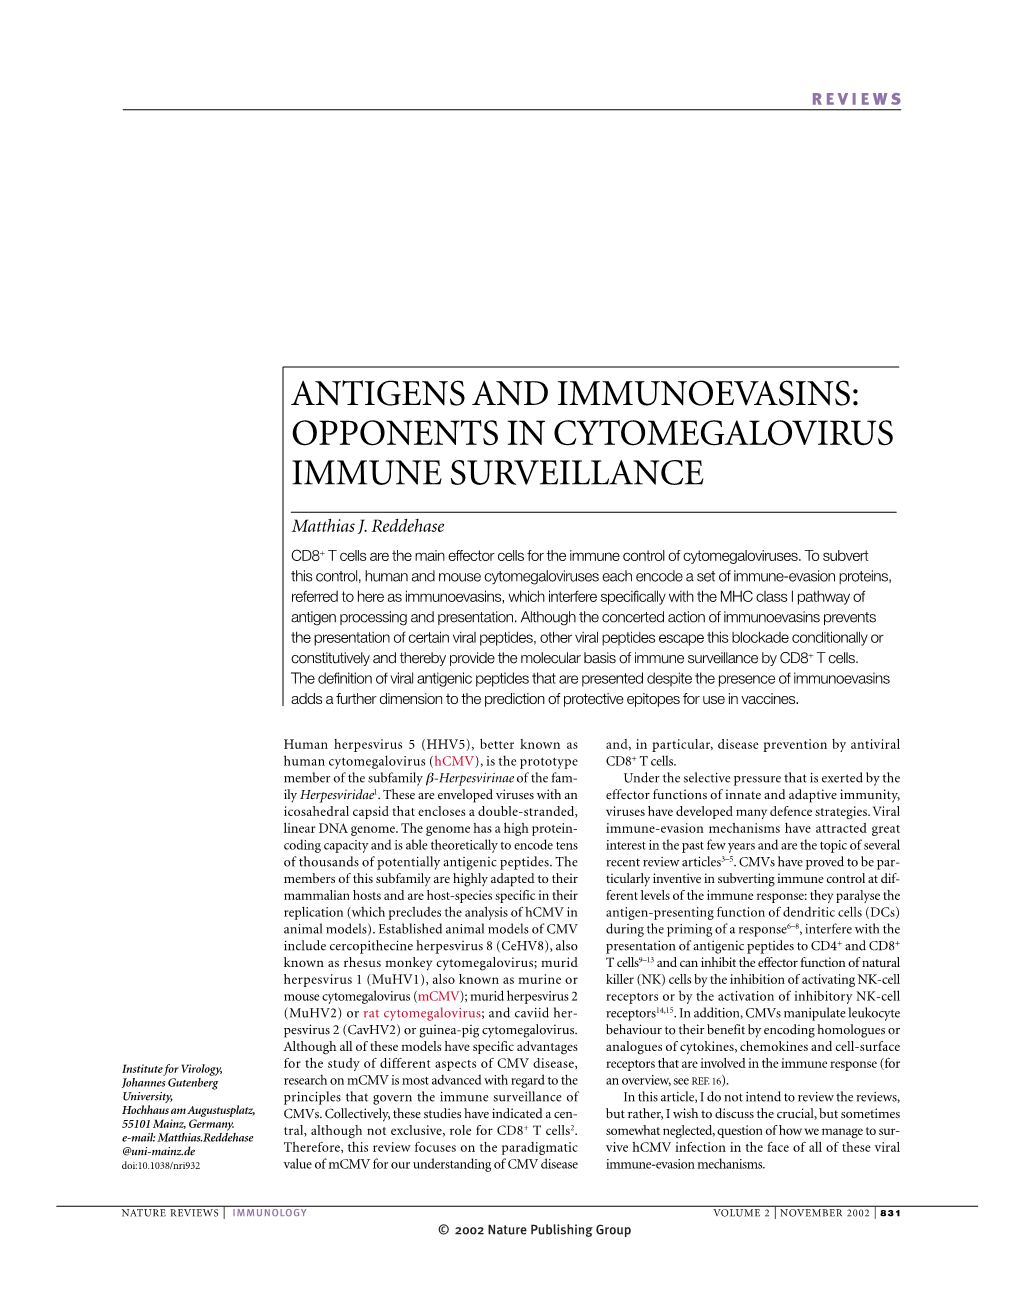 Antigens and Immunoevasins: Opponents in Cytomegalovirus Immune Surveillance